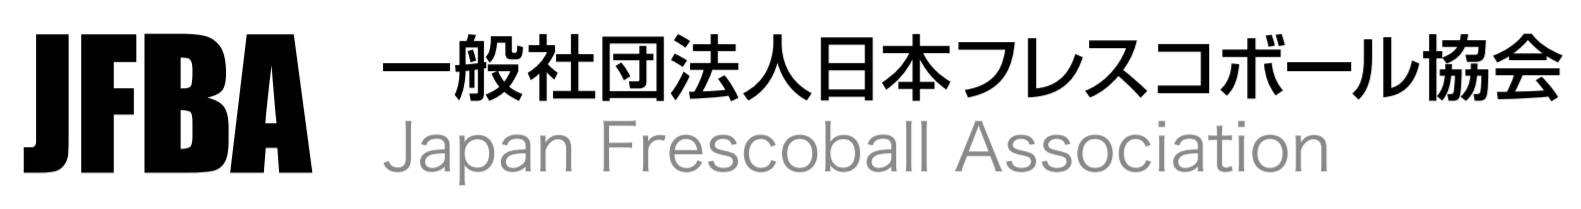 一般社団法人日本フレスコボール協会